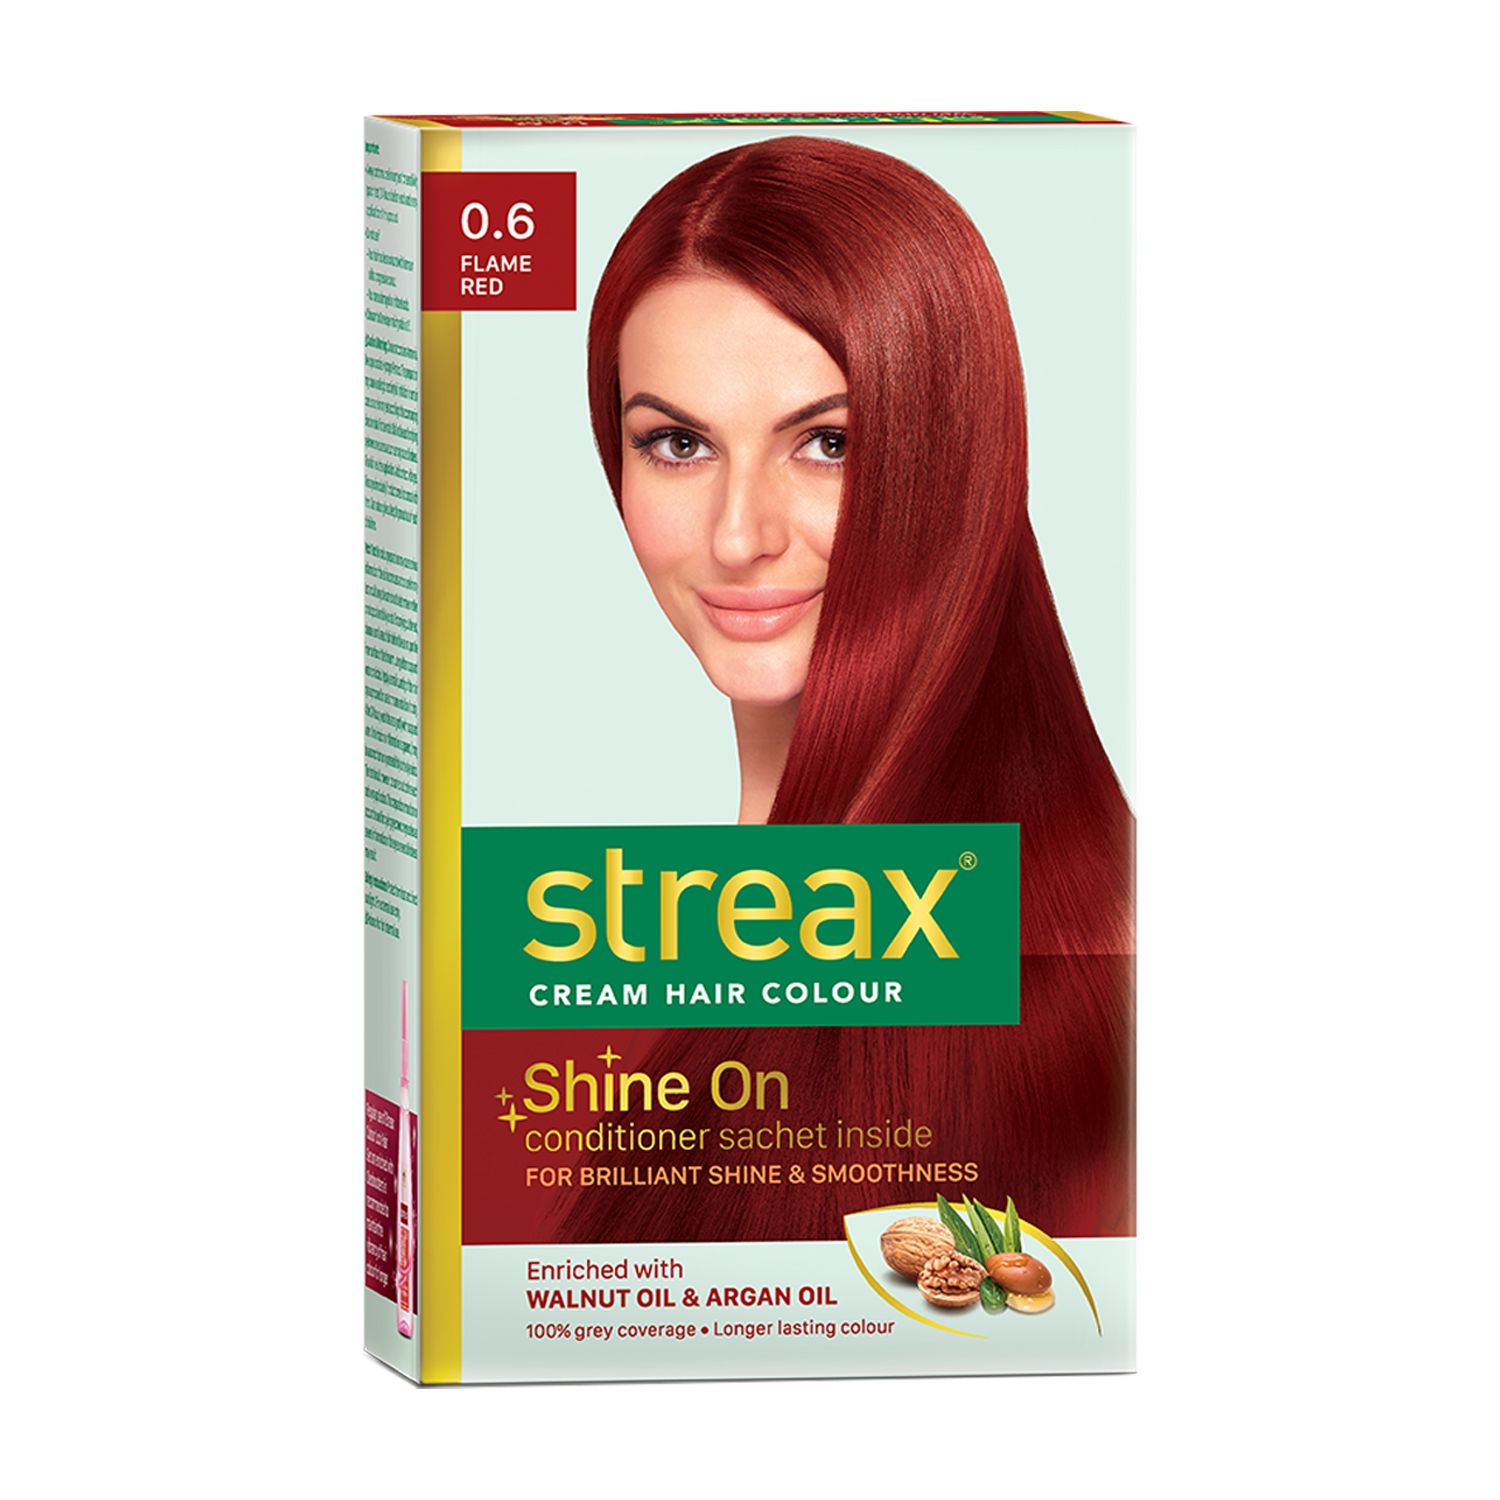 Details more than 148 streax shampoo hair colour burgundy best